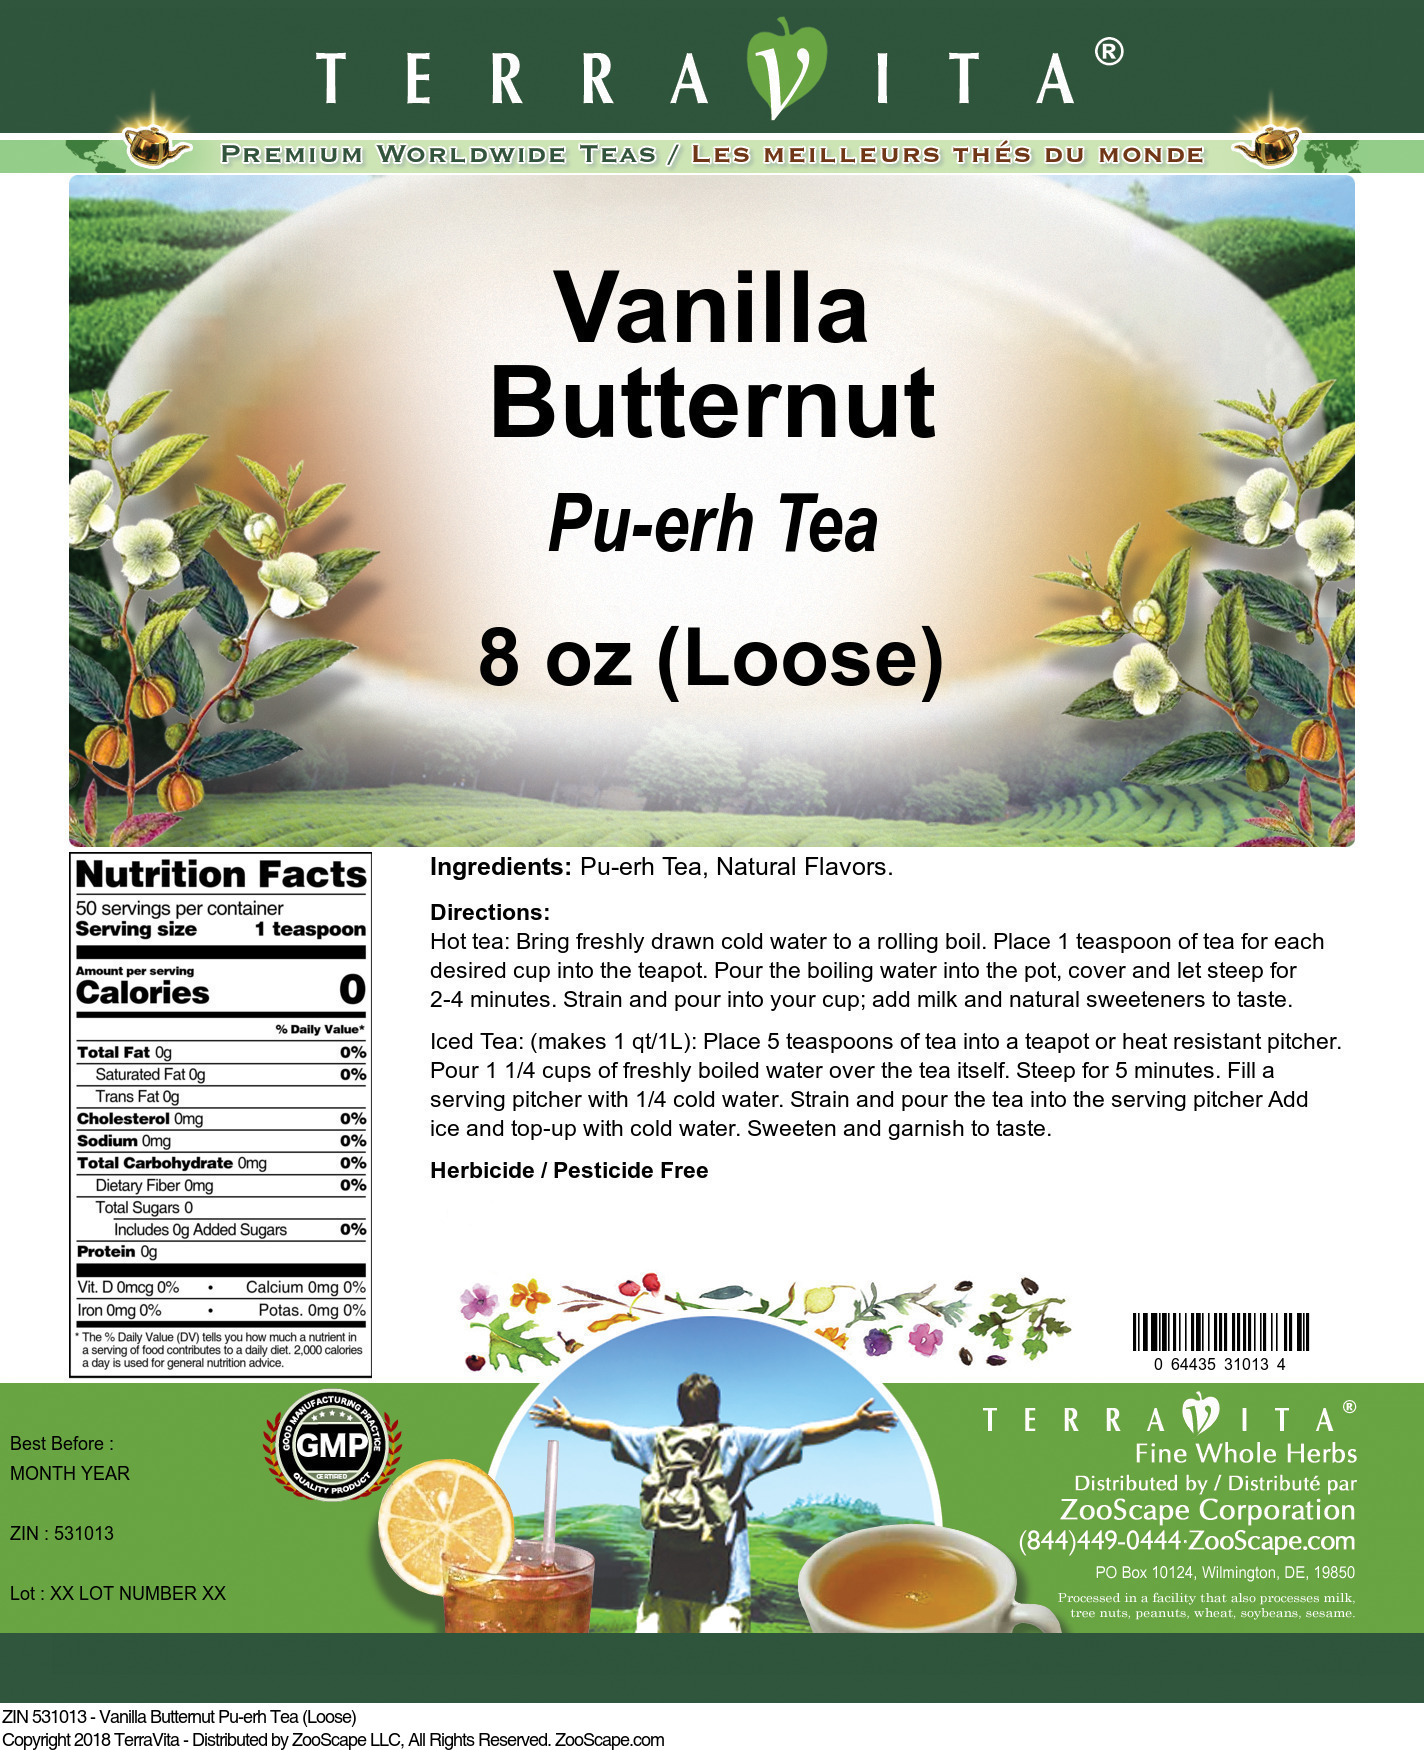 Vanilla Butternut Pu-erh Tea (Loose) - Label